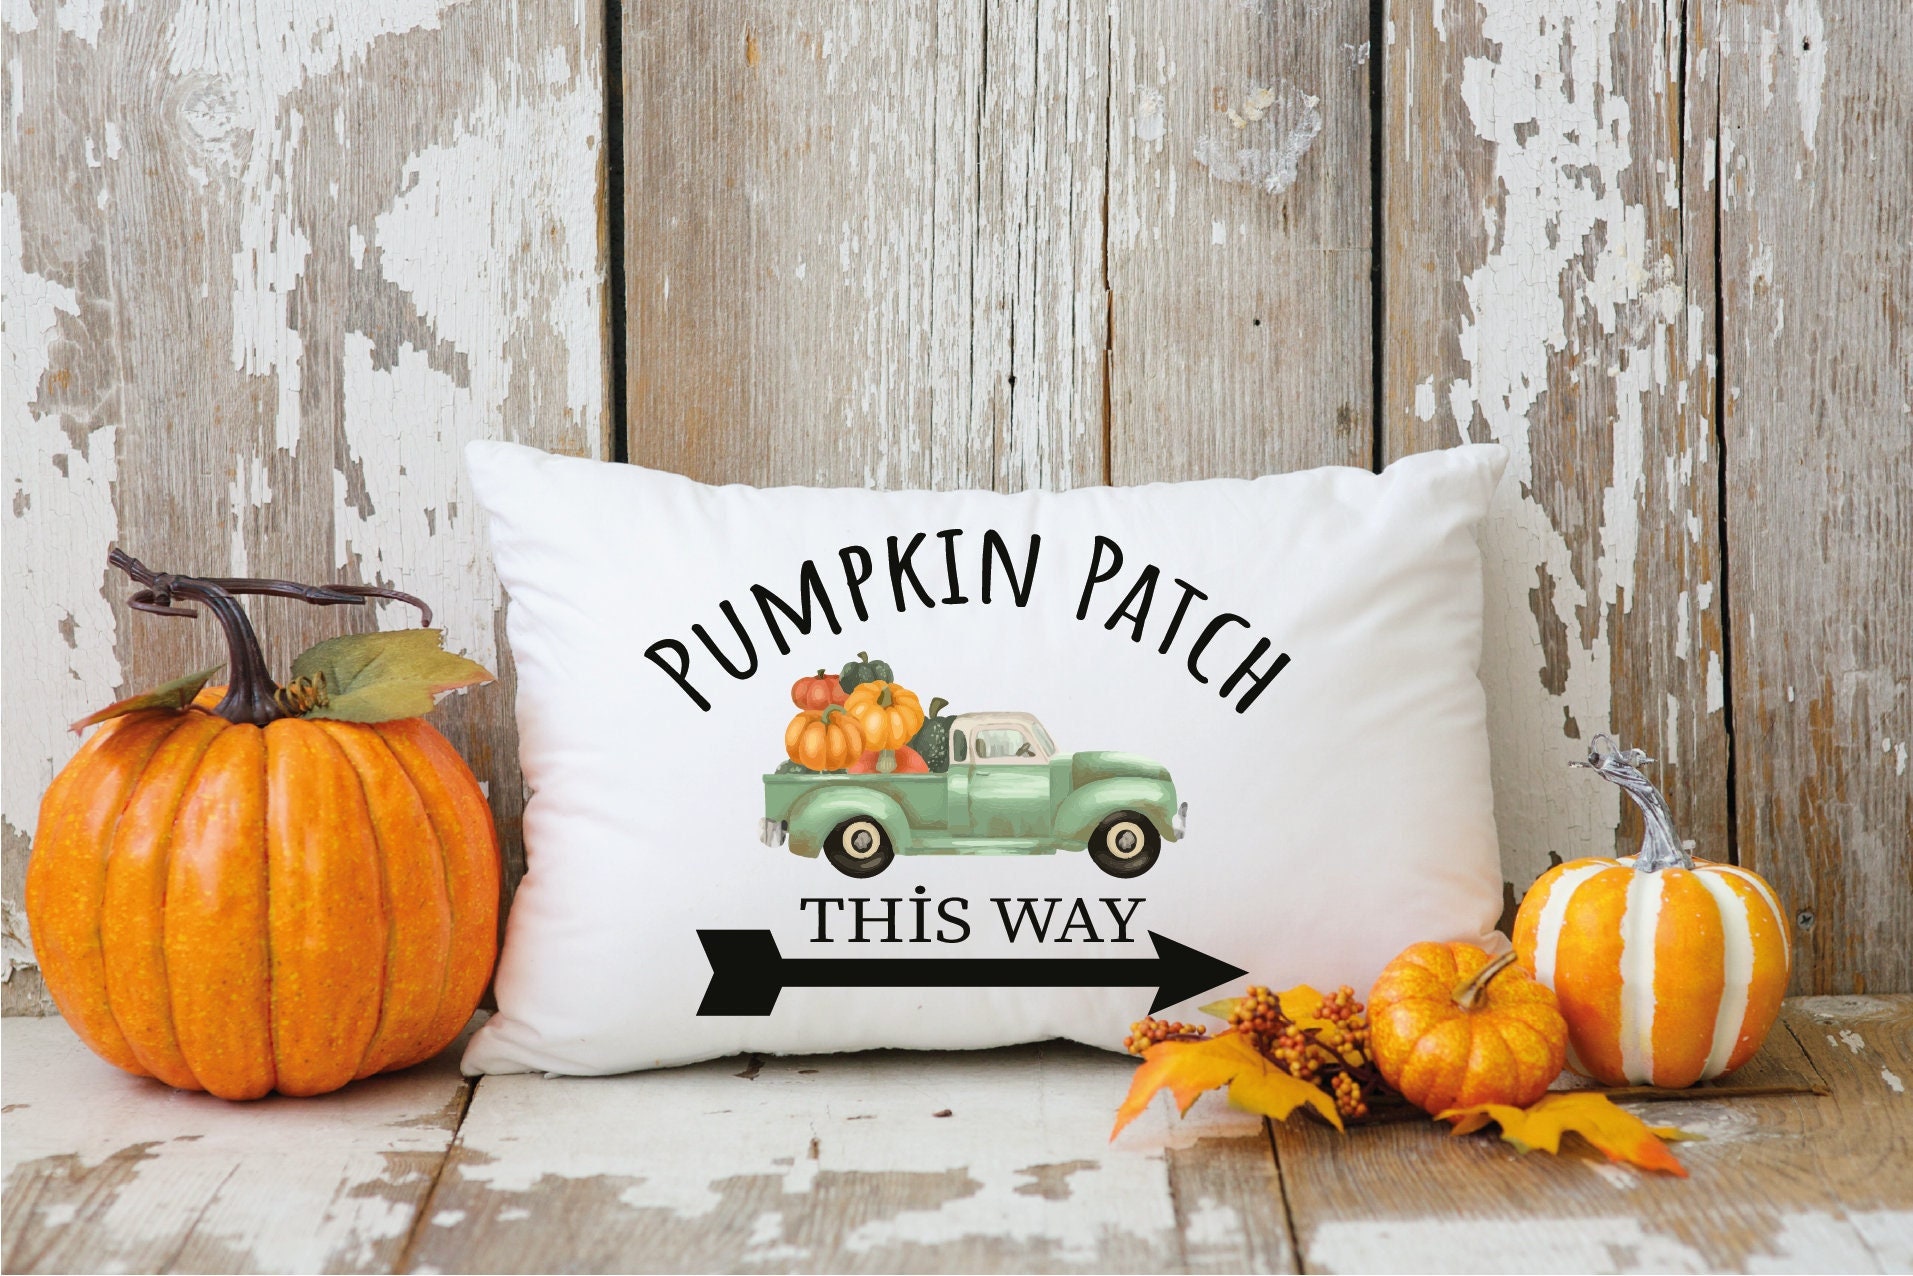 Fall Pillow Cover Pumpkin Thanksgiving Halloween Dwarf Sofa Pillow